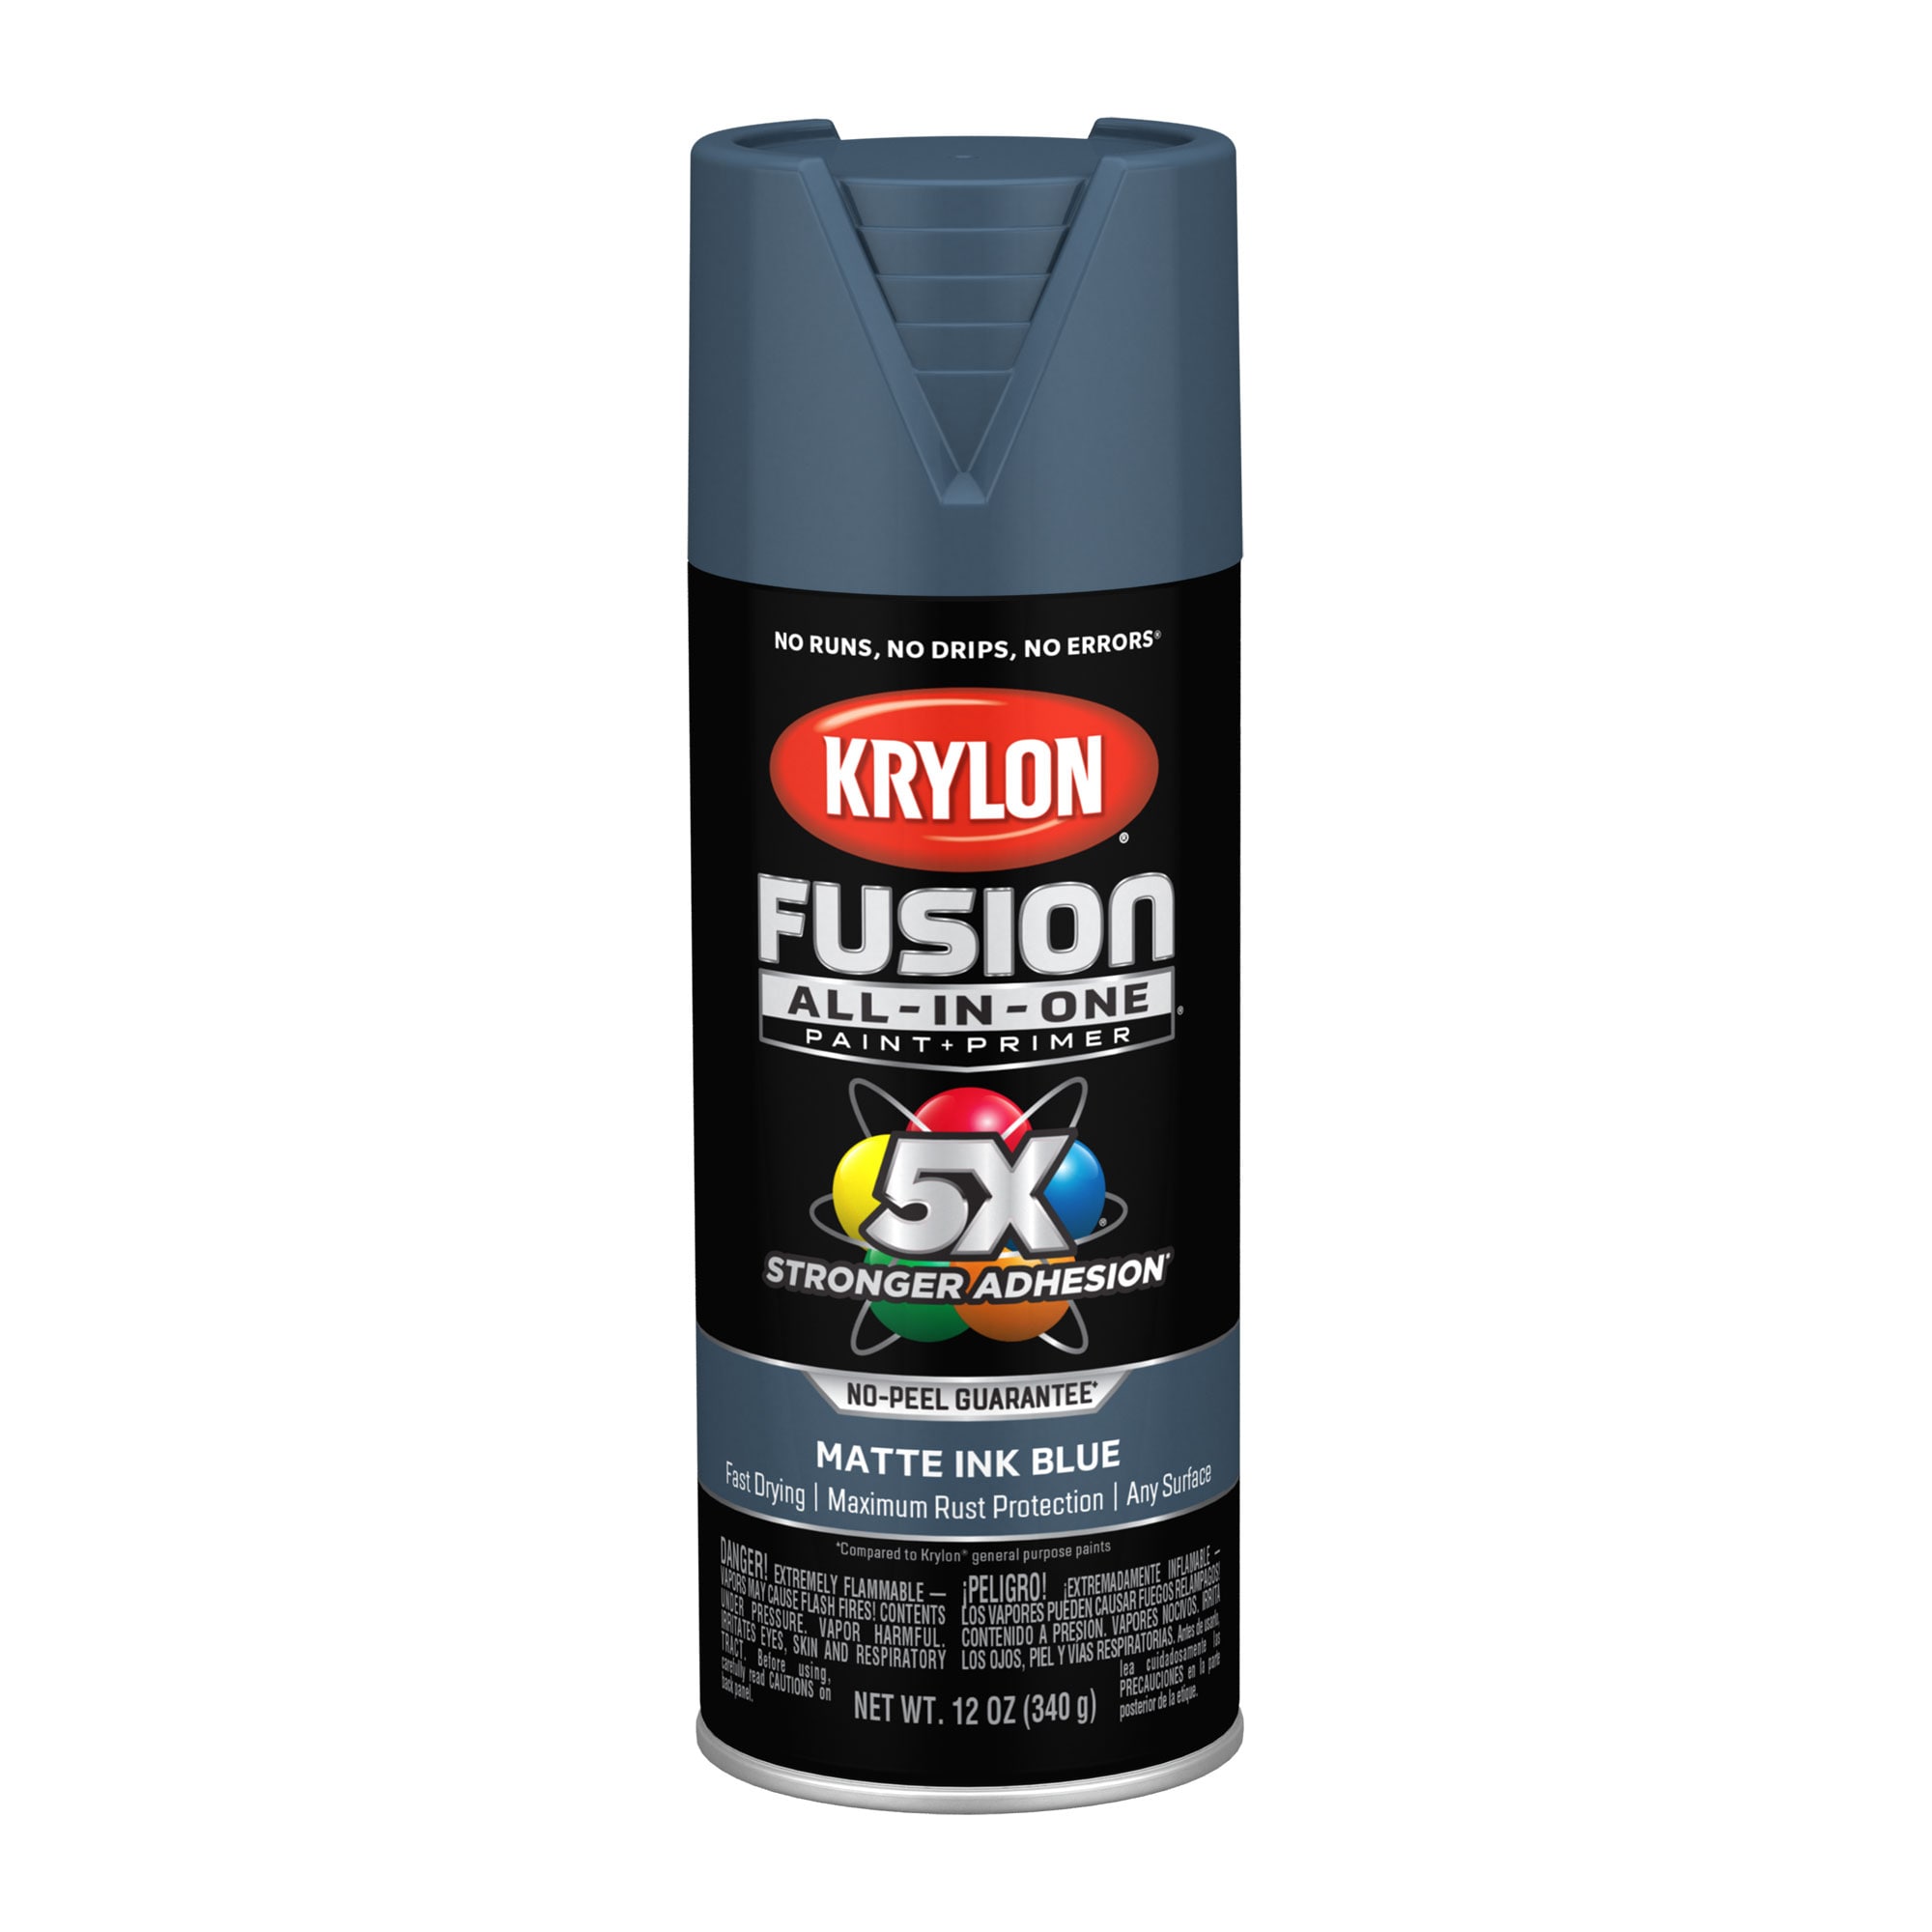 Krylon Now Spray Paint I21207007, Royal Blue, 16 oz